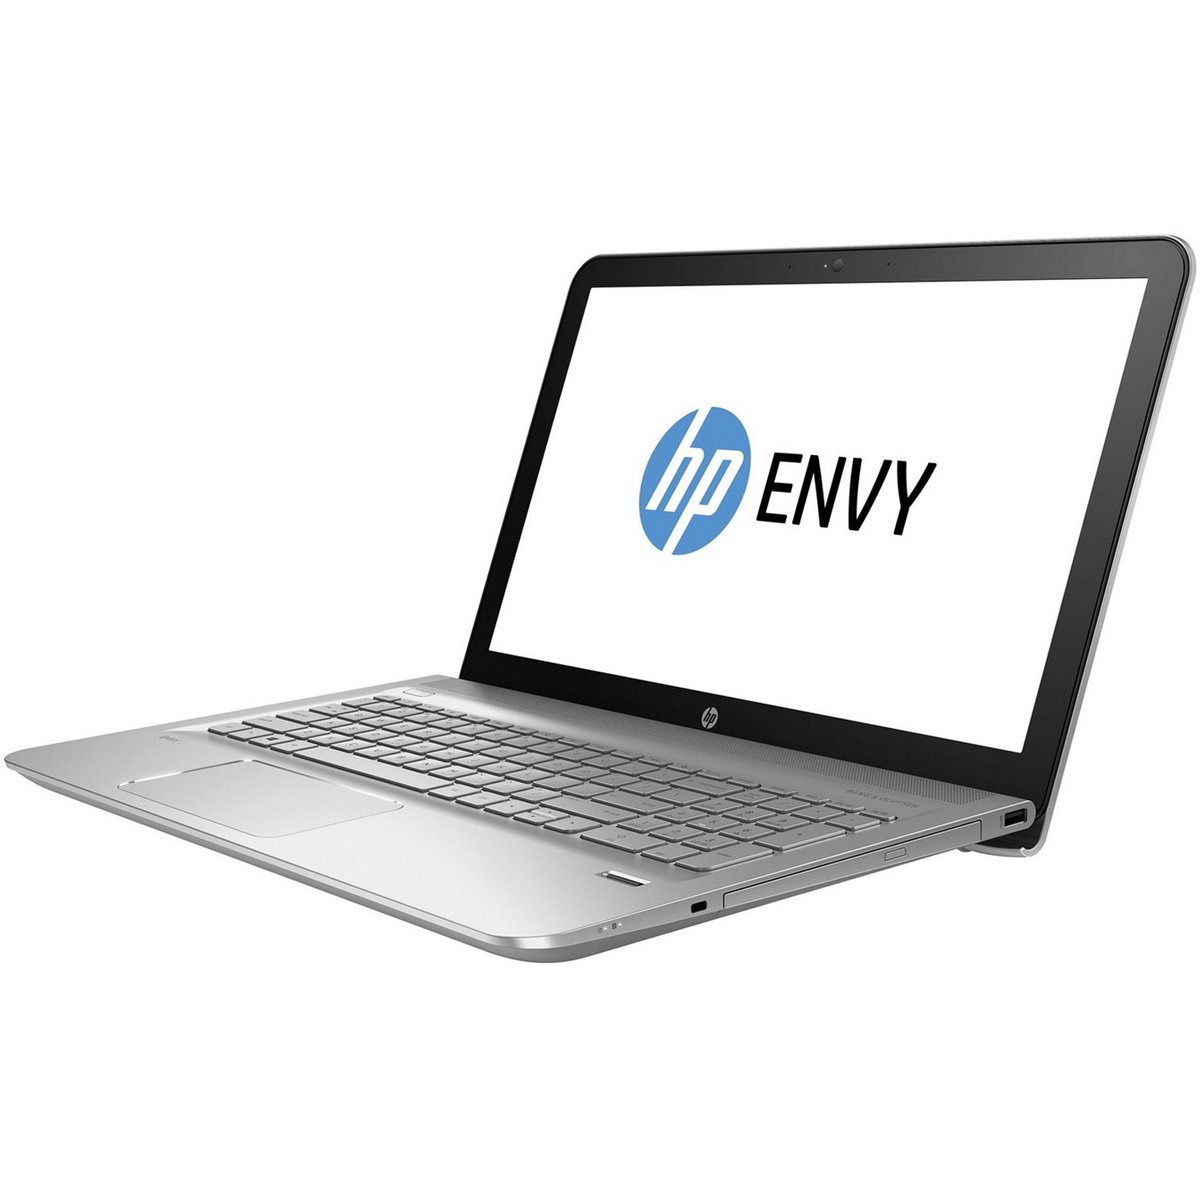 HP ENVY Notebook - 15-AE102NE Ci5 Silver